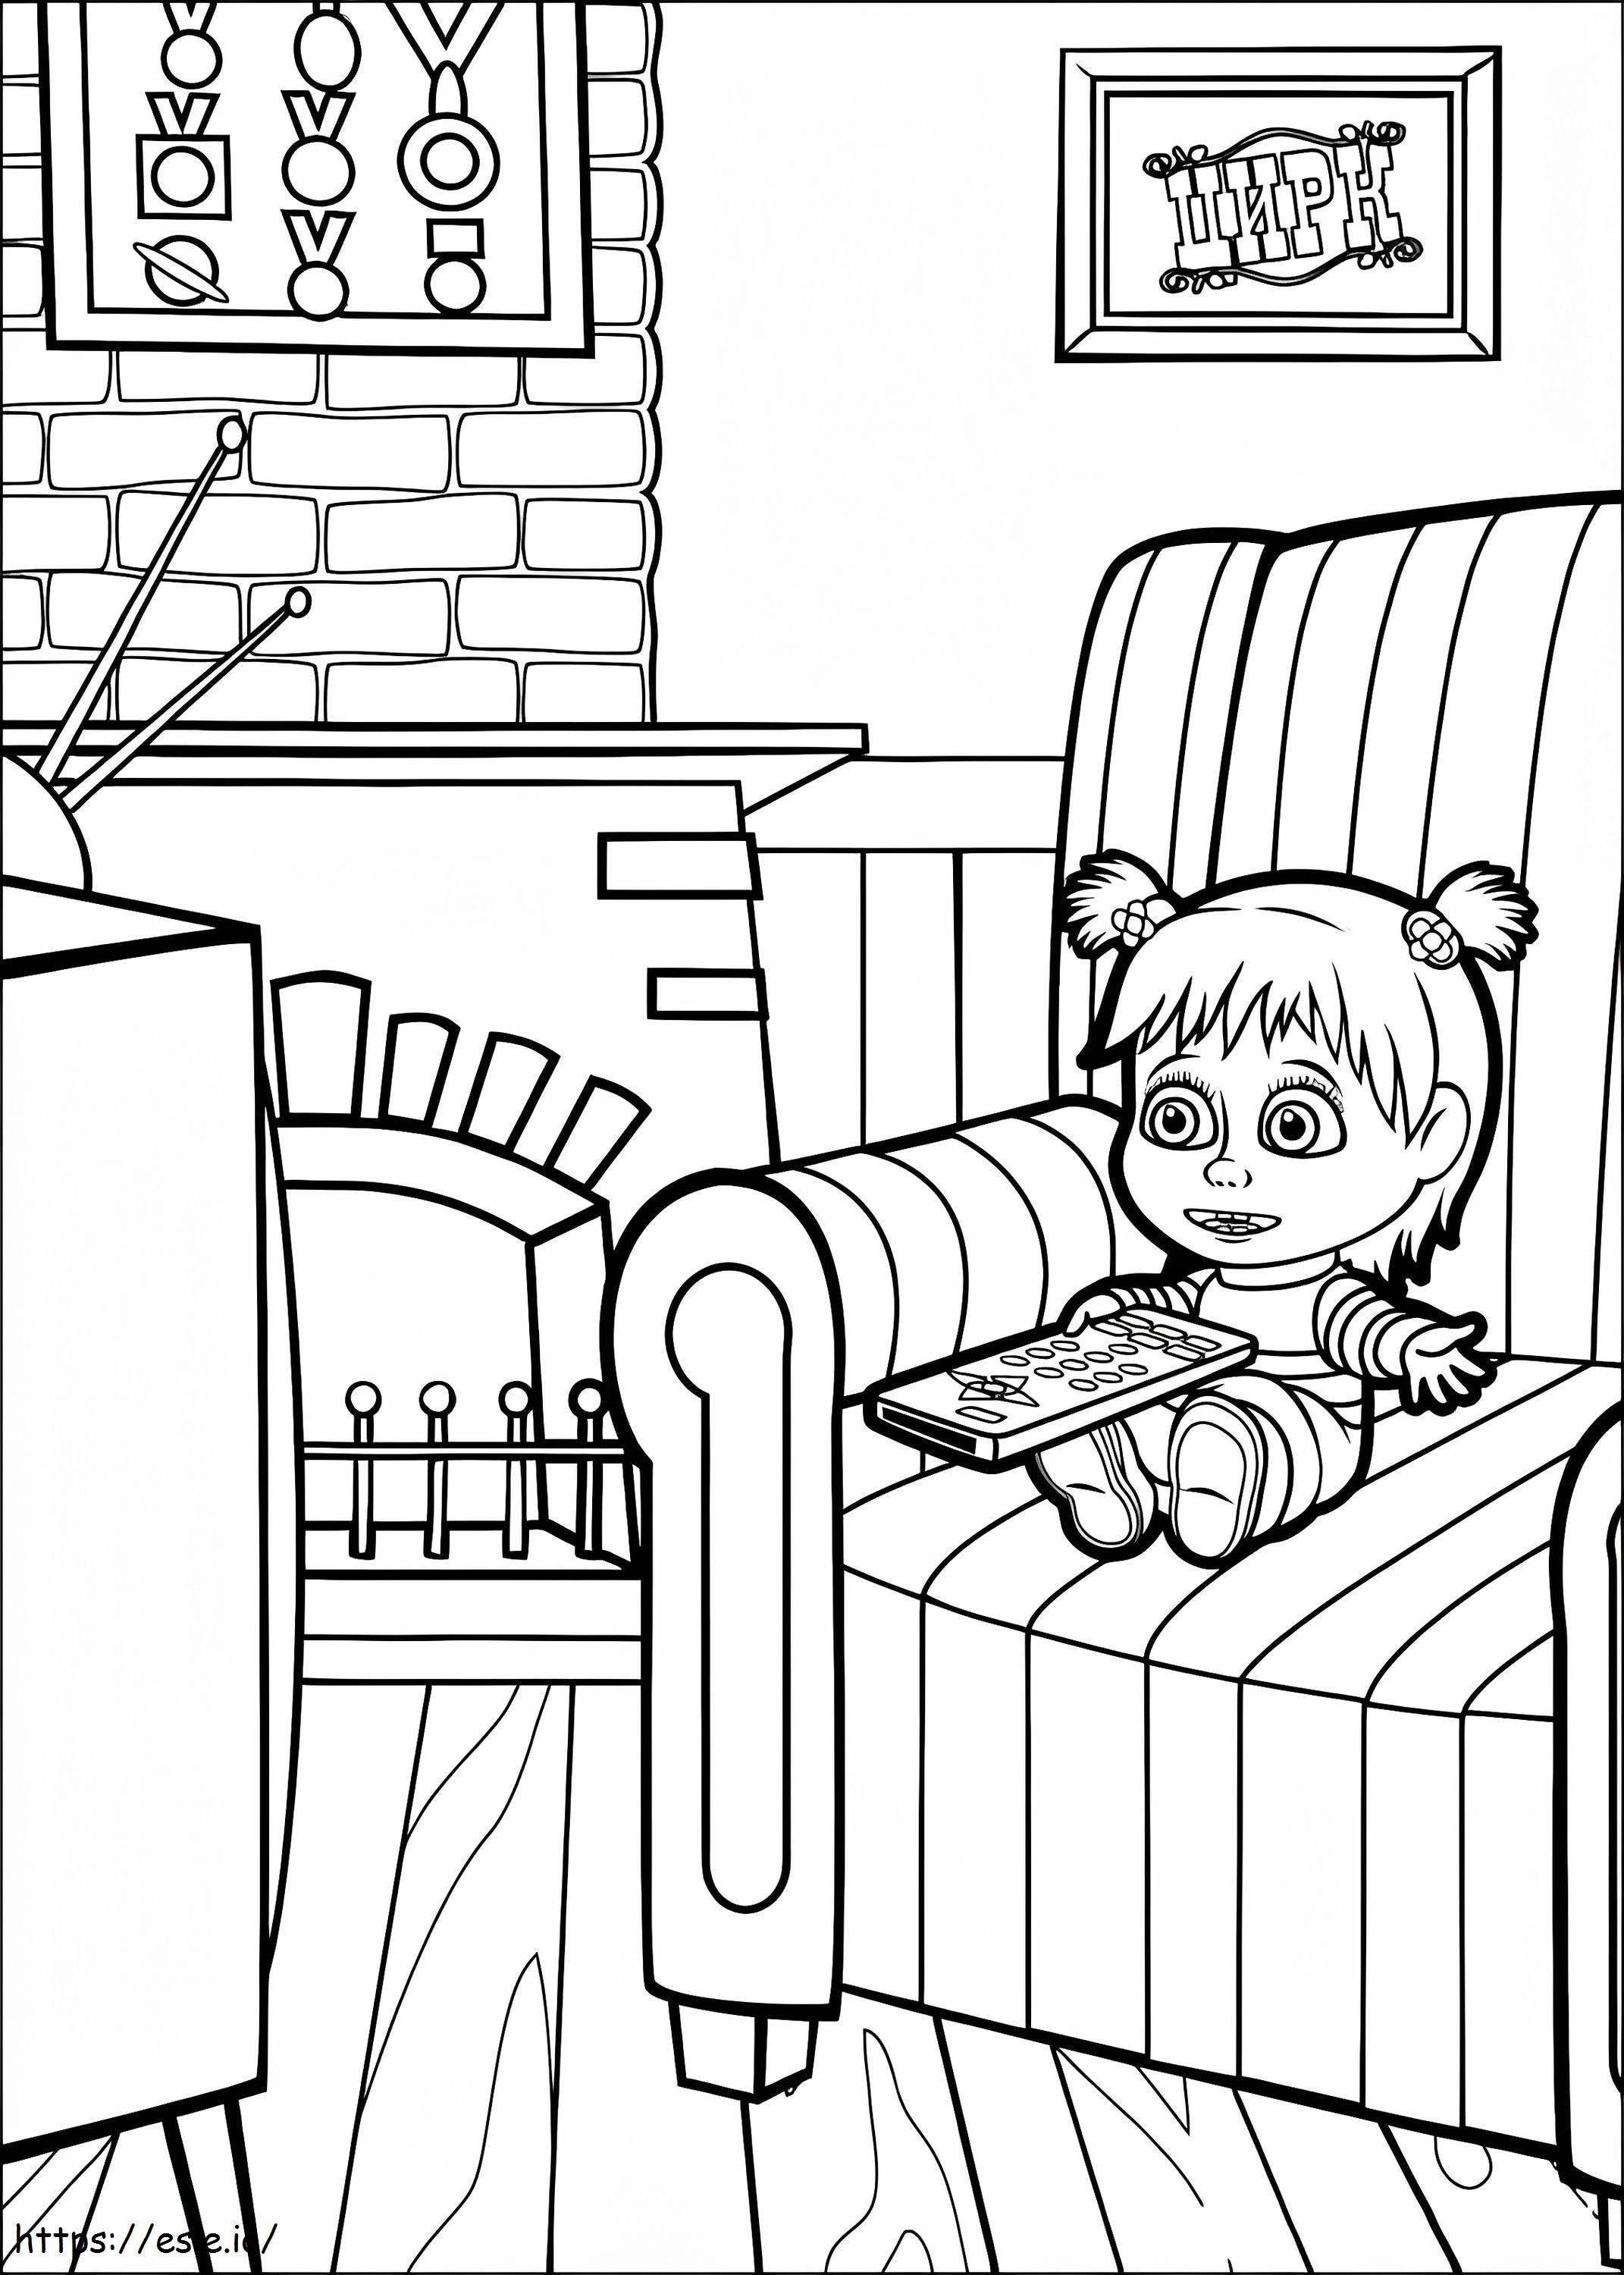 La piccola Masha guarda la TV da colorare